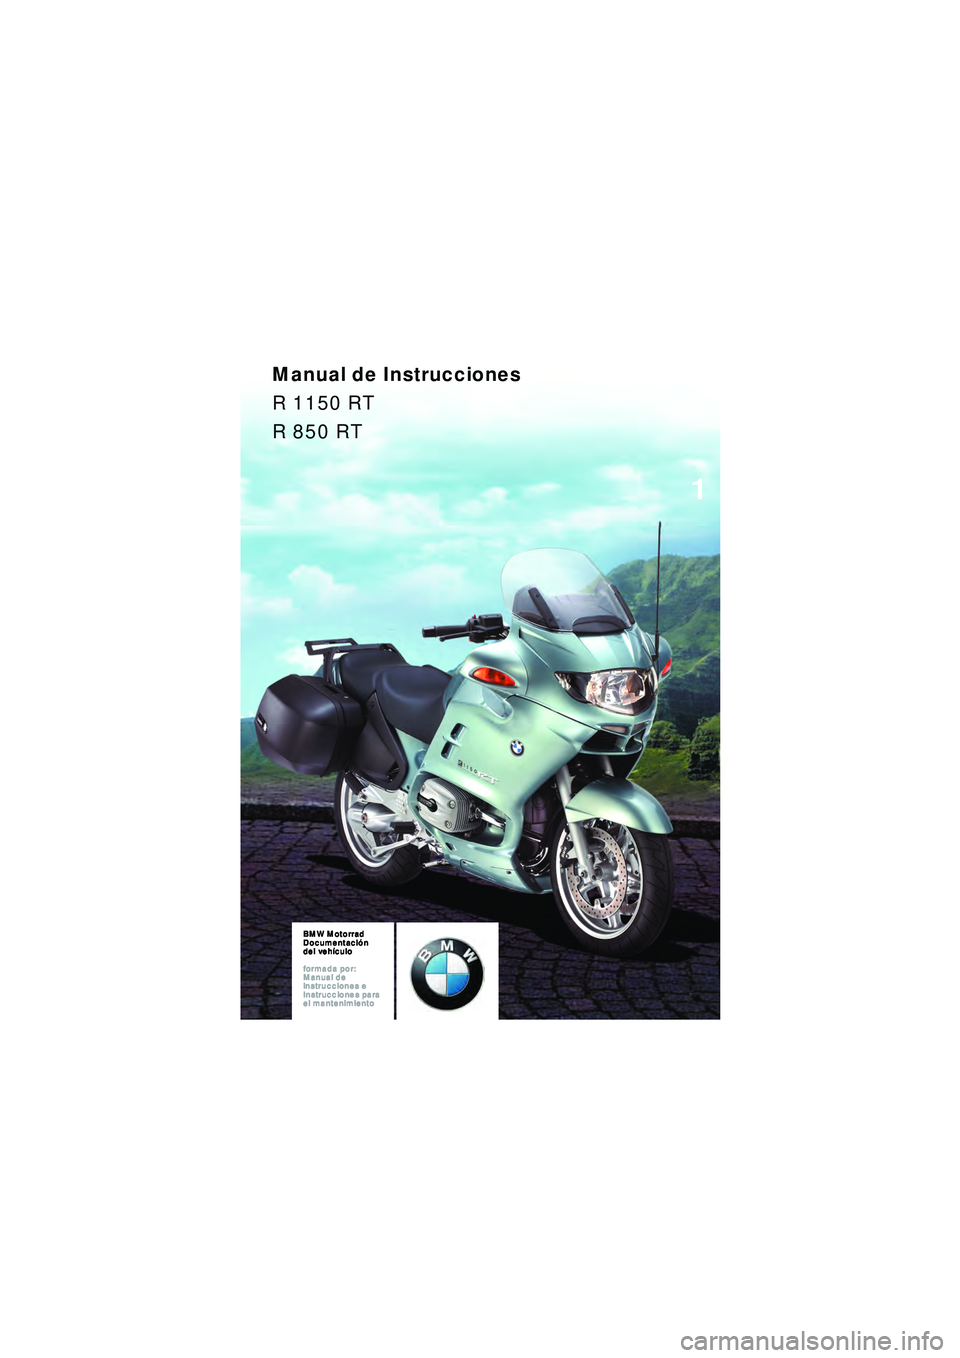 BMW MOTORRAD R 1150 RT 2002  Manual de instrucciones (in Spanish) 1
BMW Motorrad
Documentación  
del vehículo
formada por:  
Manual de  
instrucciones e  
Instrucciones para  
el mantenimientoBMW Motorrad
Documentaci ón  
del vehículo
formada por:  
Manual de  
